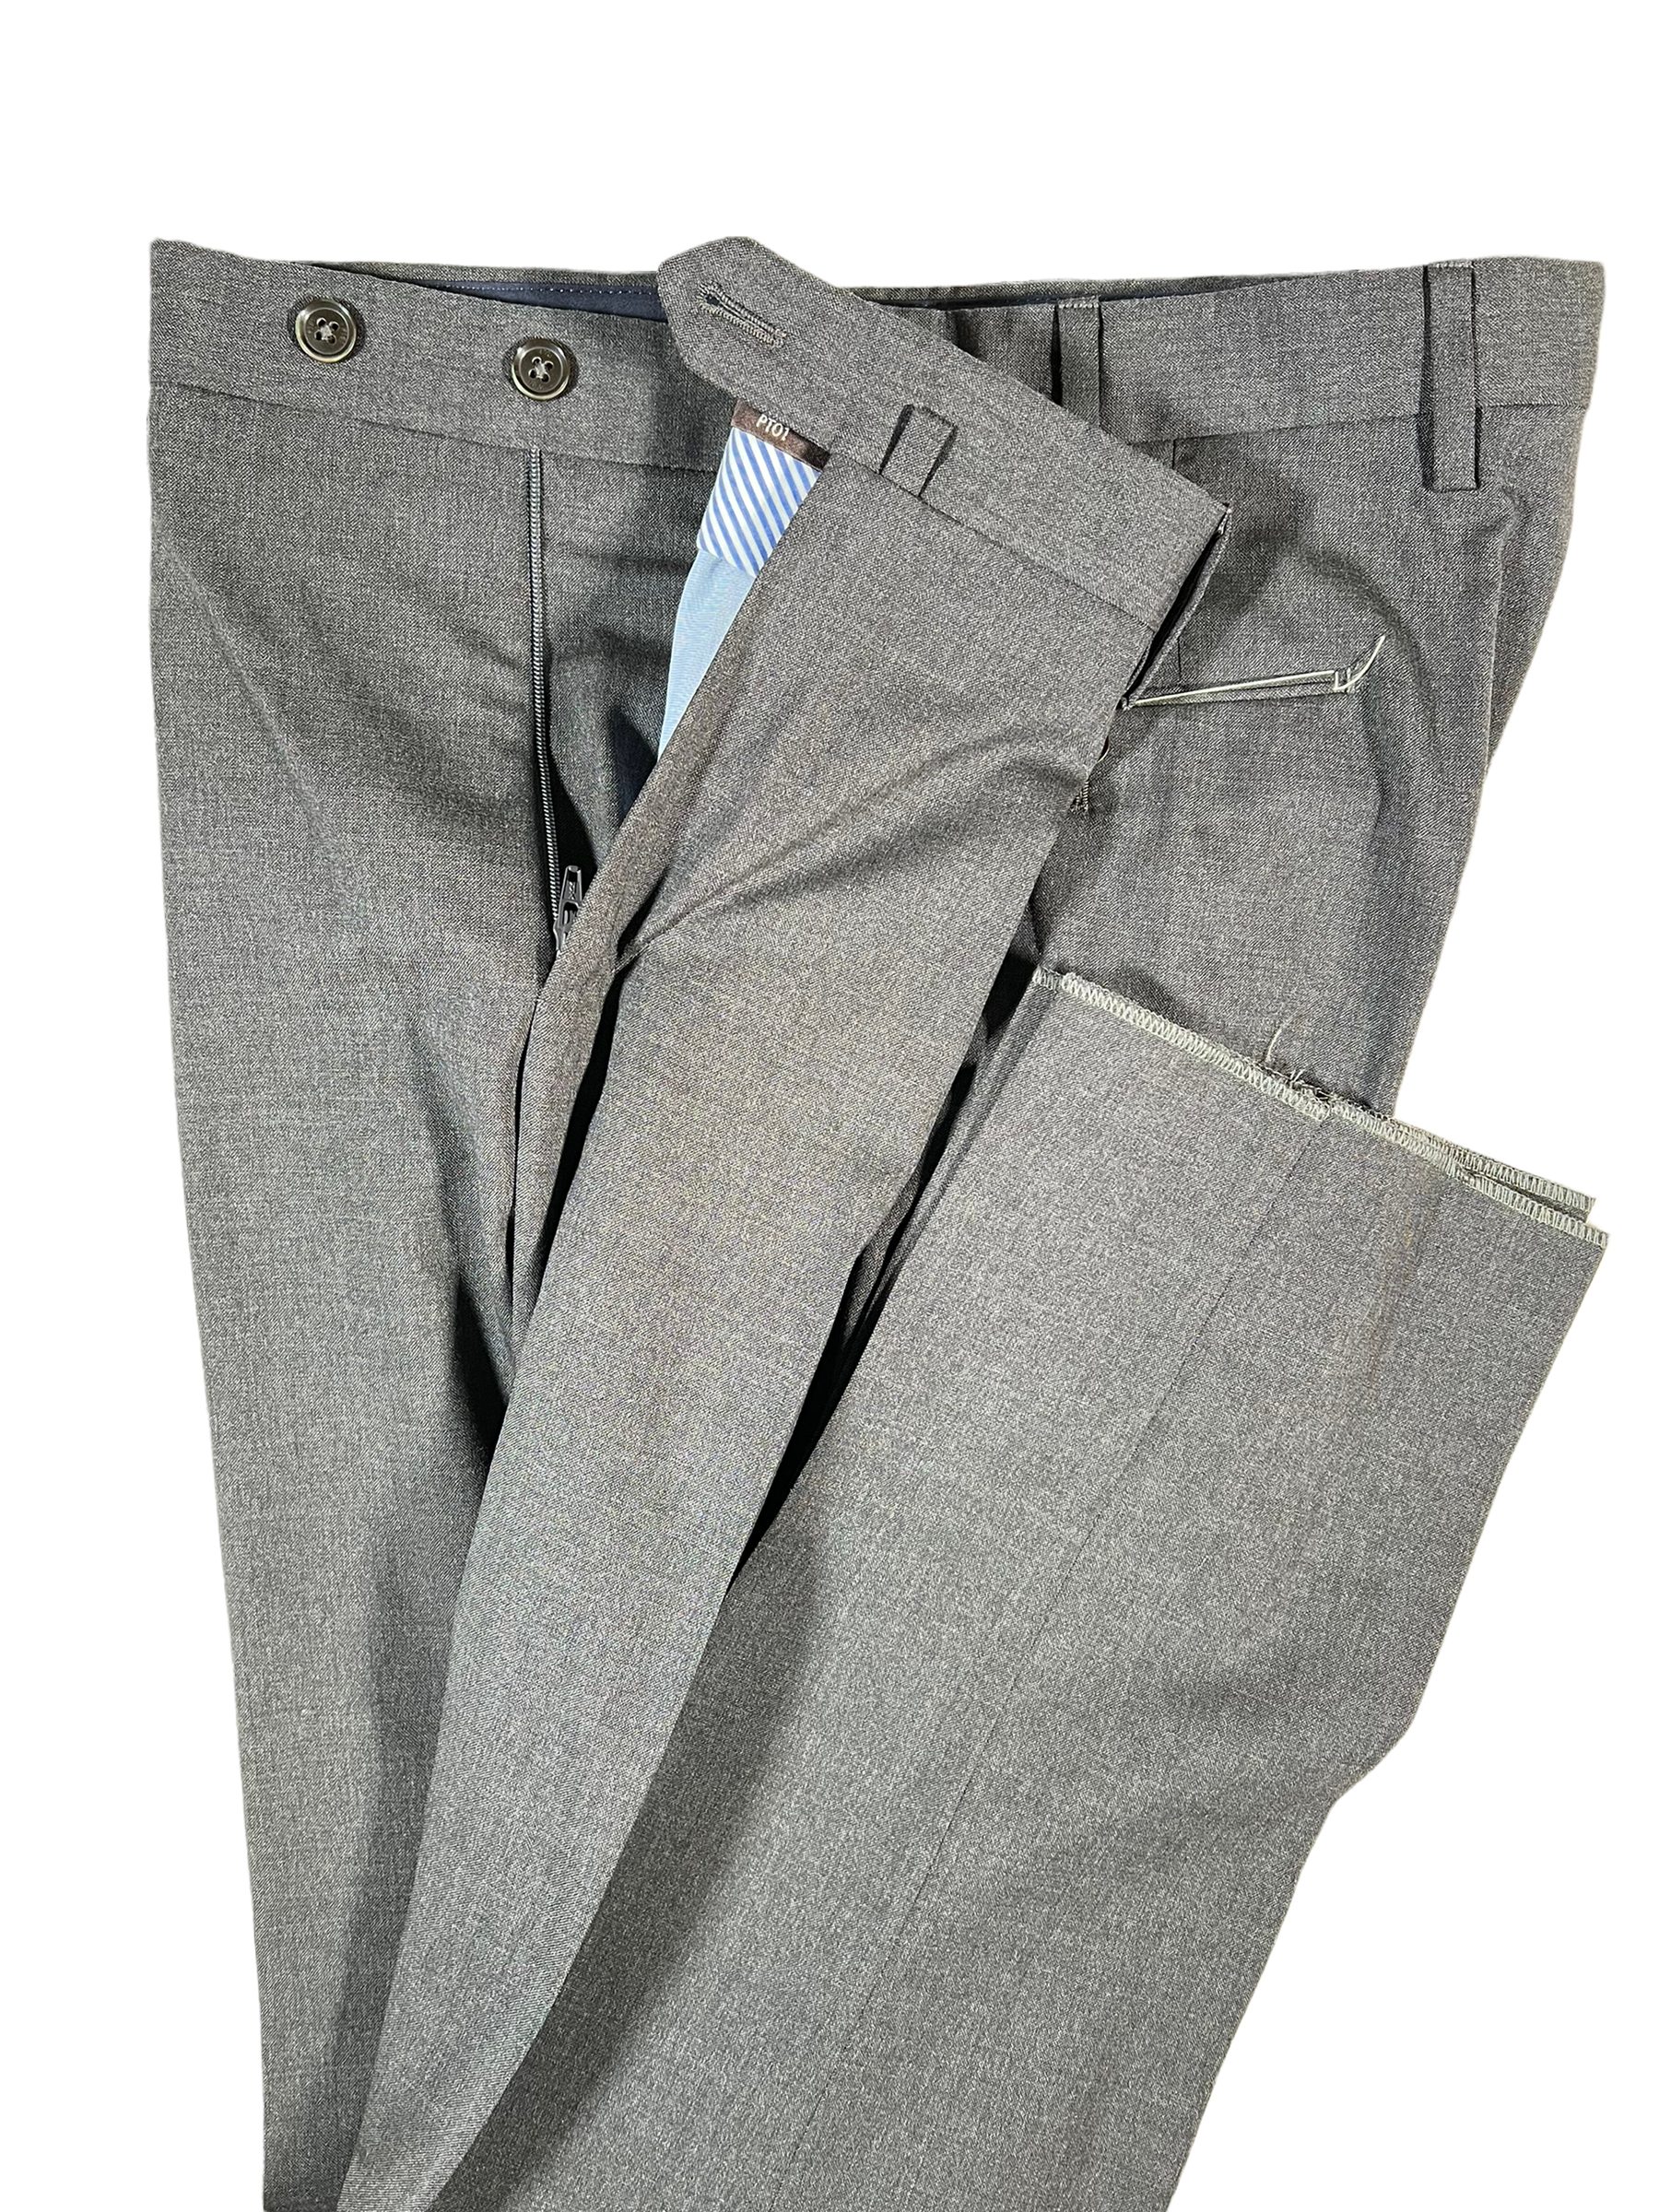 Jinda Men's Business Pants Ankle Casual Pants Casual Cotton Spandex Business  Casual Elastic Waist Trousers Black 34 - Walmart.com